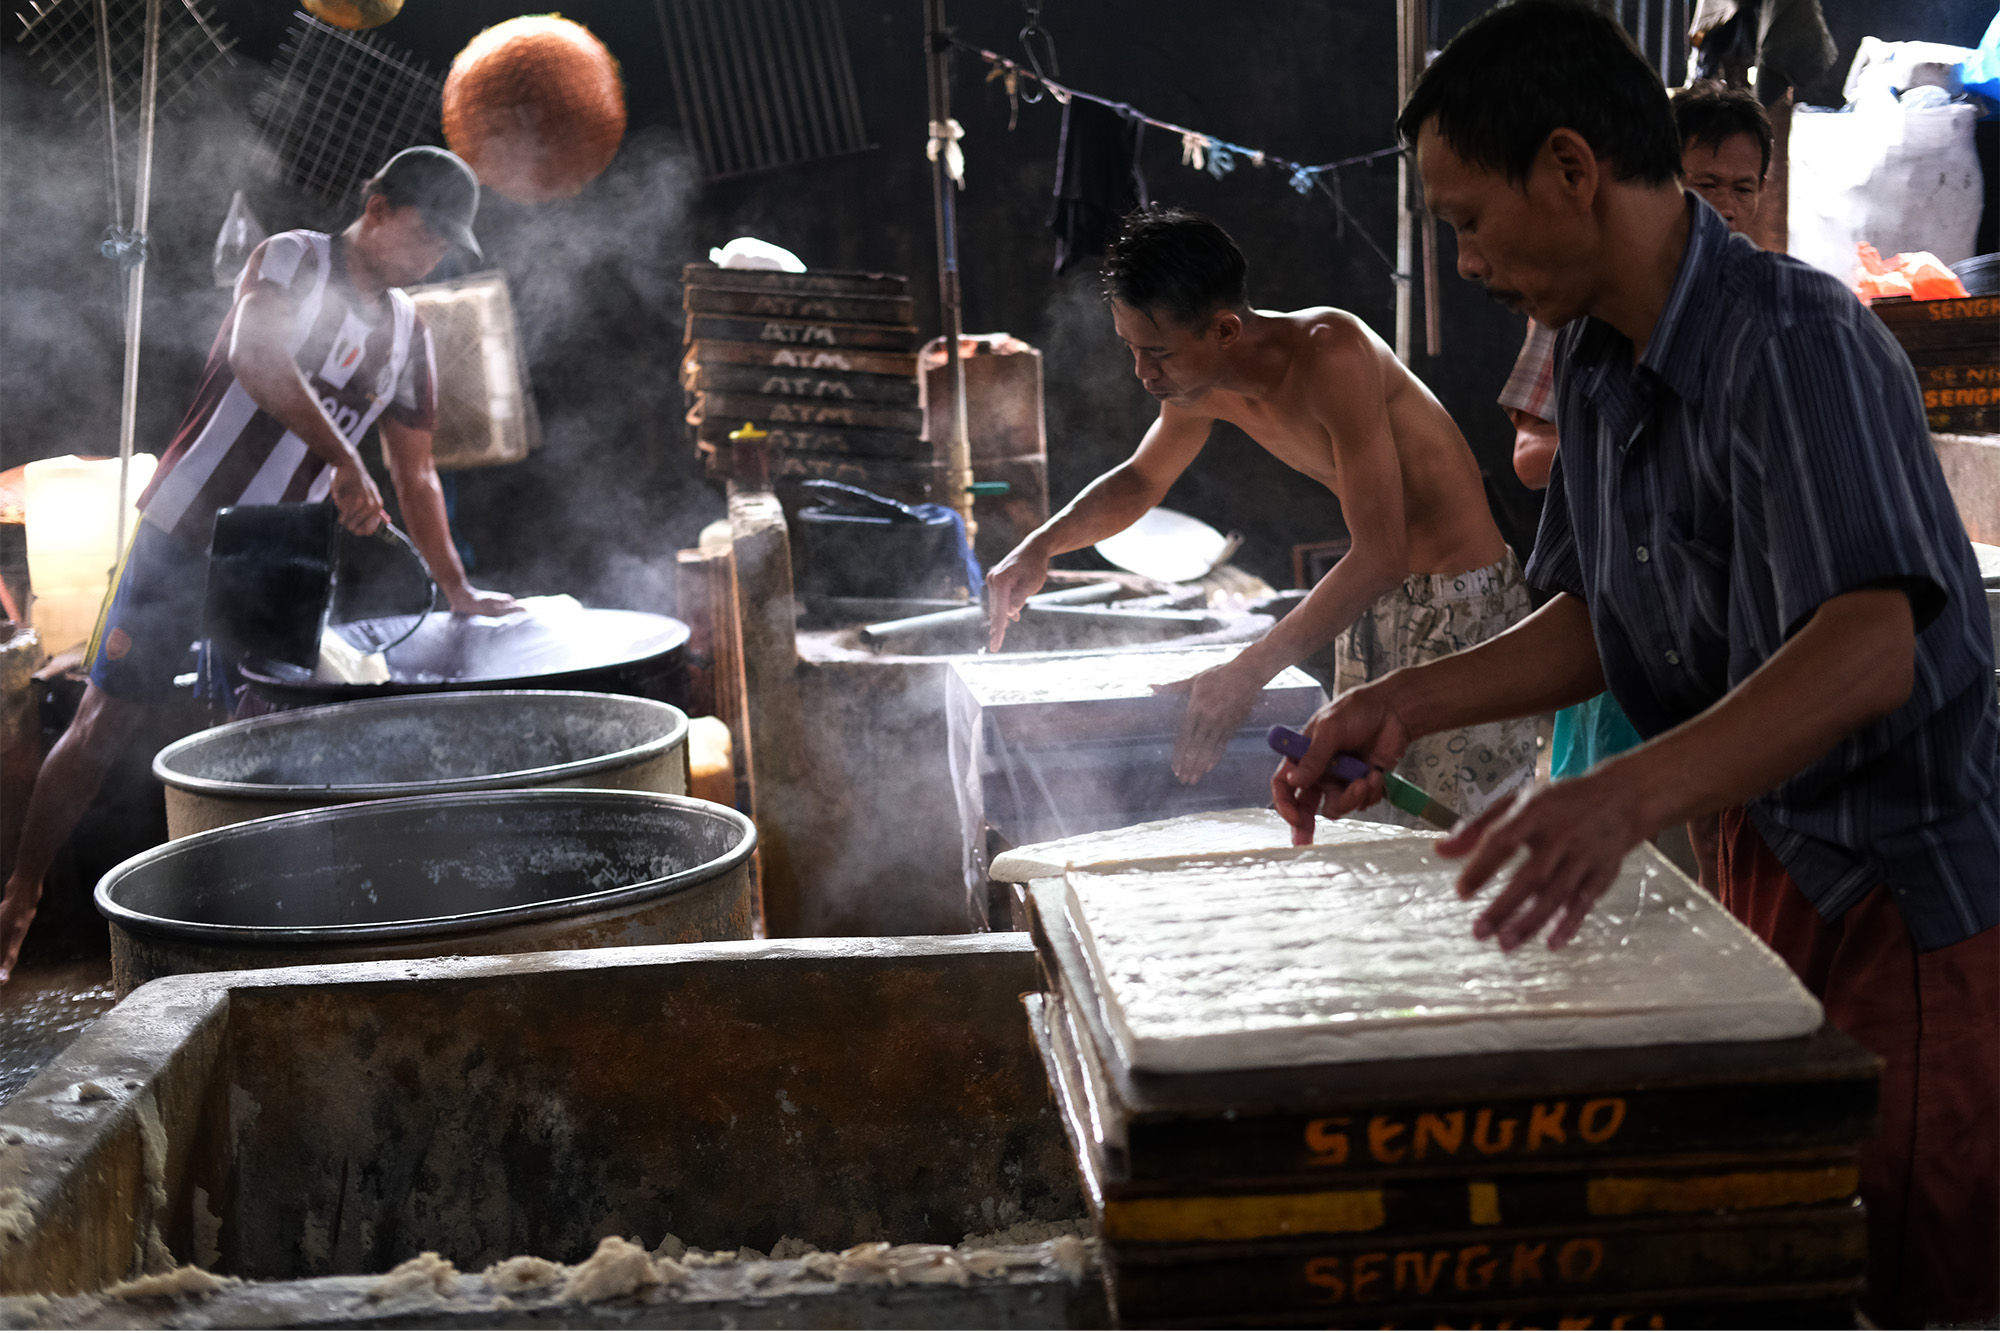 <p>Pekerja menyelesaikan proses pembuatan tahu di industri rumahan kawasan Duren Tiga, Jakarta Selatan, Senin, 19 Oktober 2020. Foto: Ismail Pohan/TrenAsia</p>
